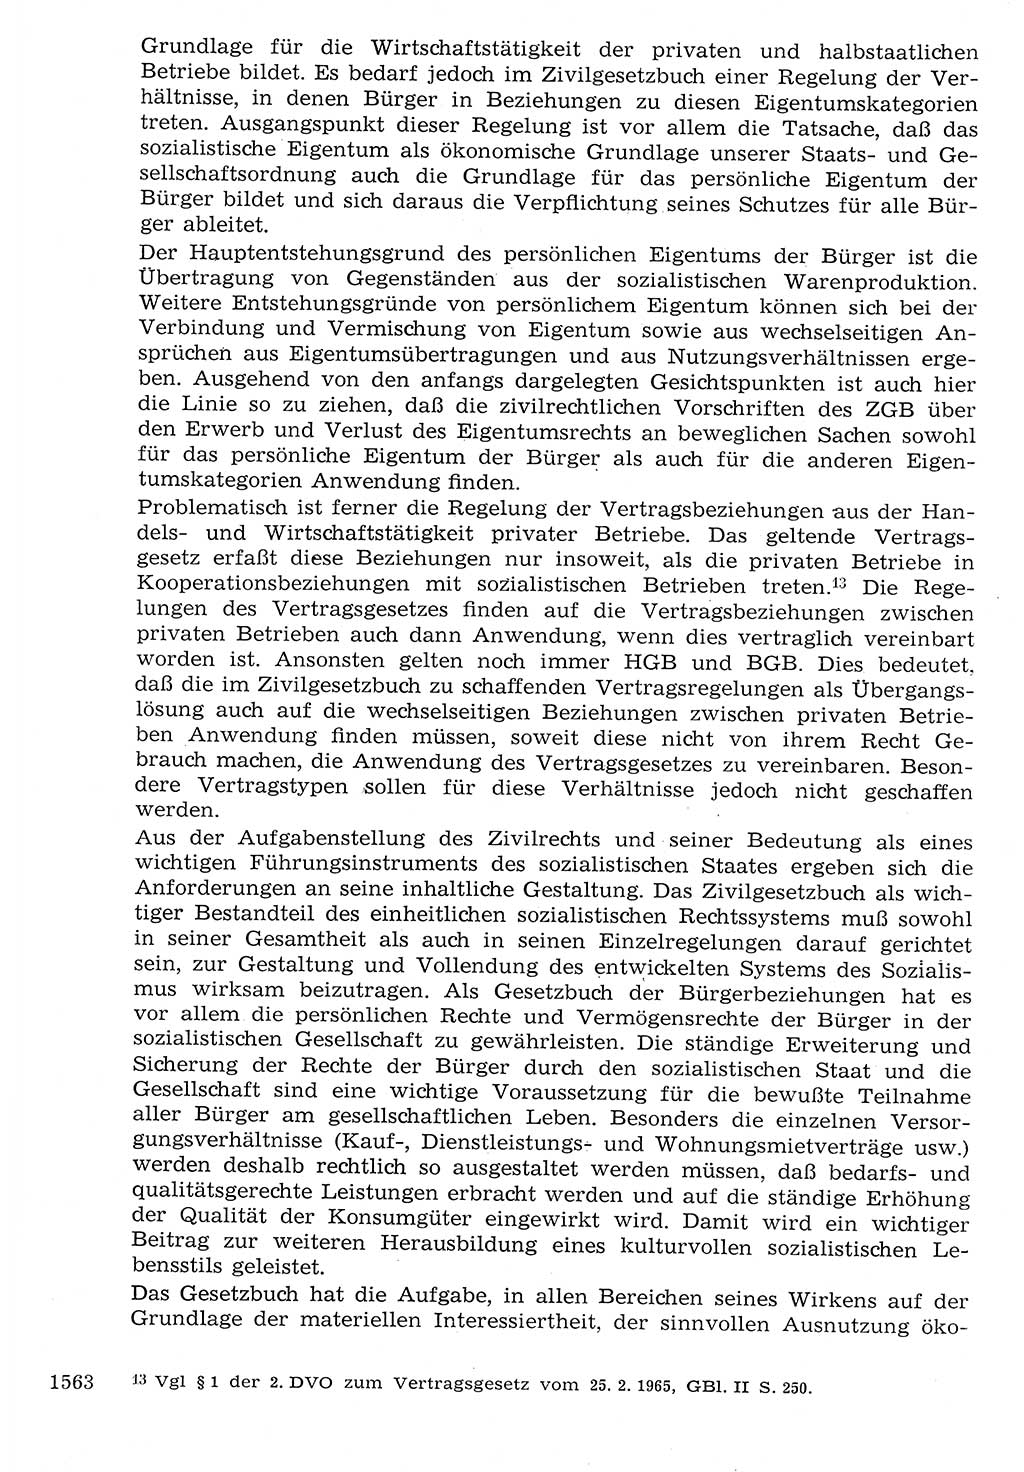 Staat und Recht (StuR), 17. Jahrgang [Deutsche Demokratische Republik (DDR)] 1968, Seite 1563 (StuR DDR 1968, S. 1563)